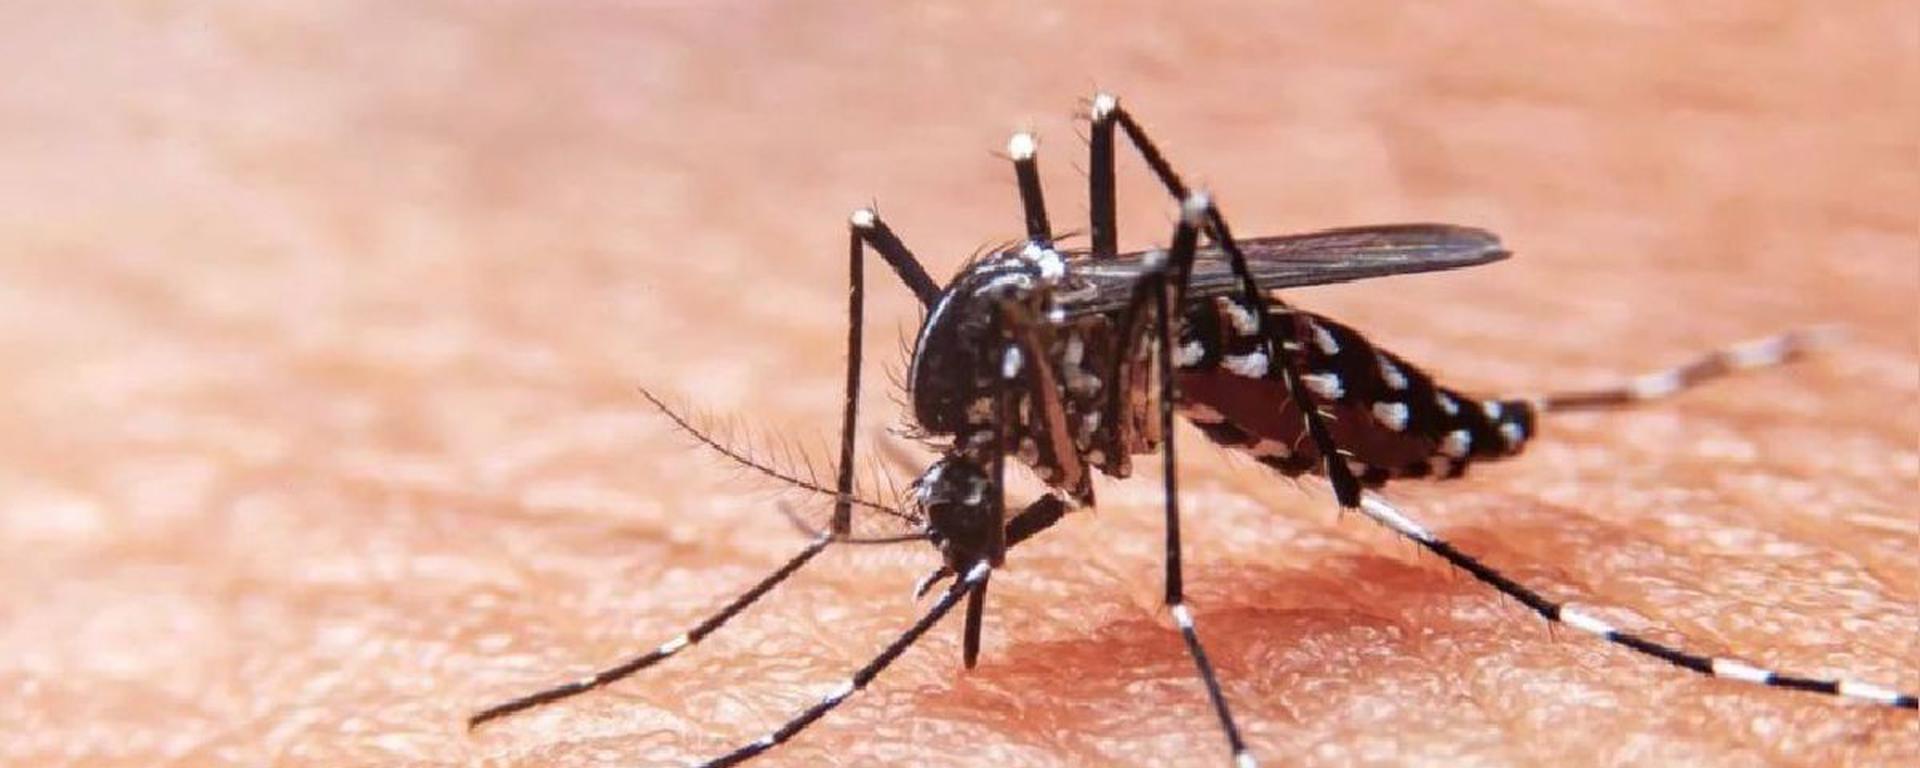 Pico histórico de casos de dengue en Lima: Miraflores, Surco y San Borja casi triplicaron contagios